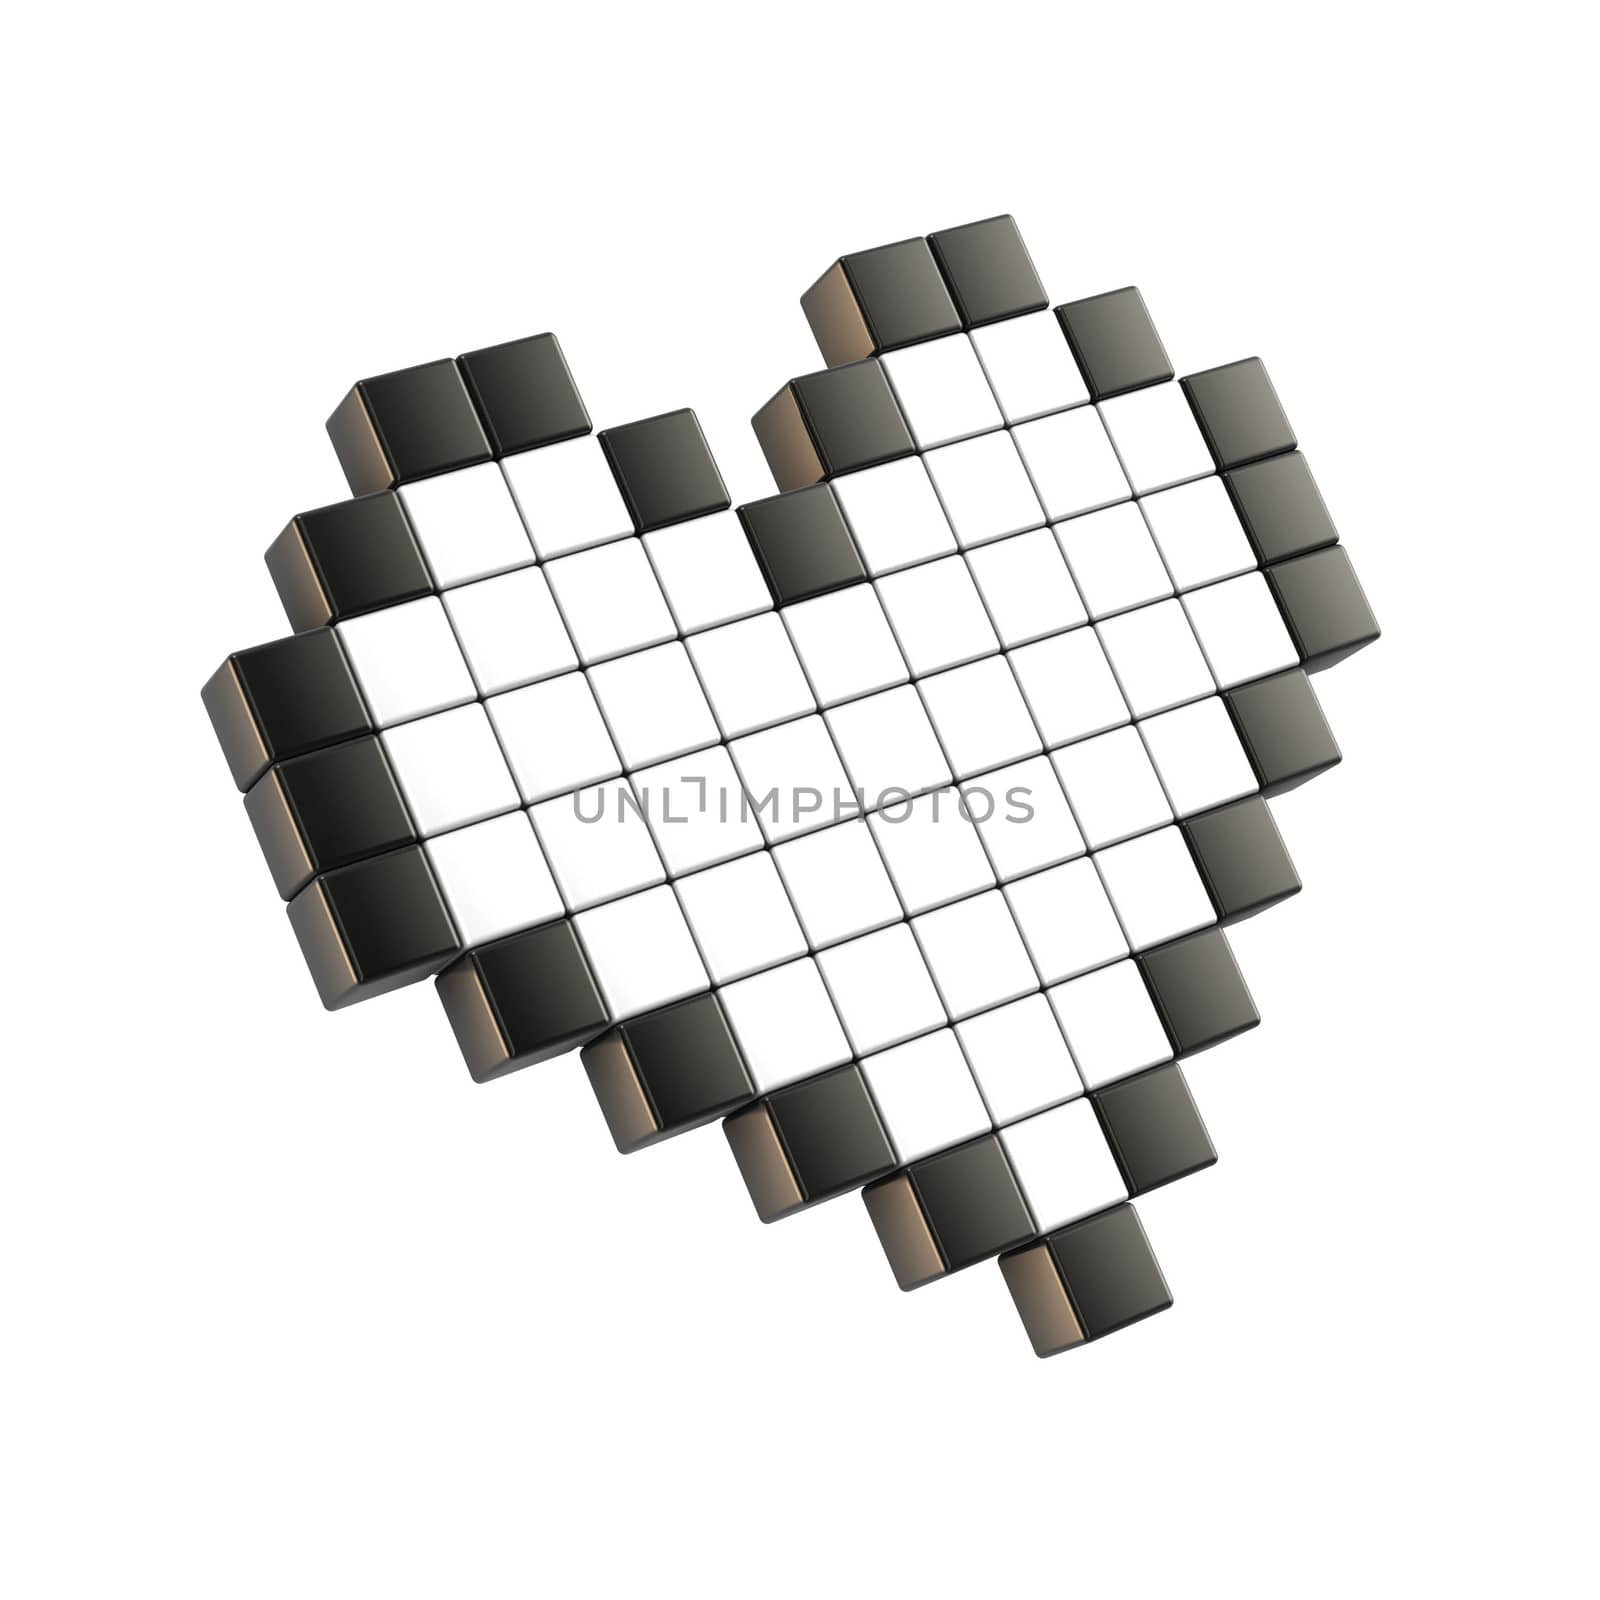 White pixel heart. 3D render illustration. Isolated on white